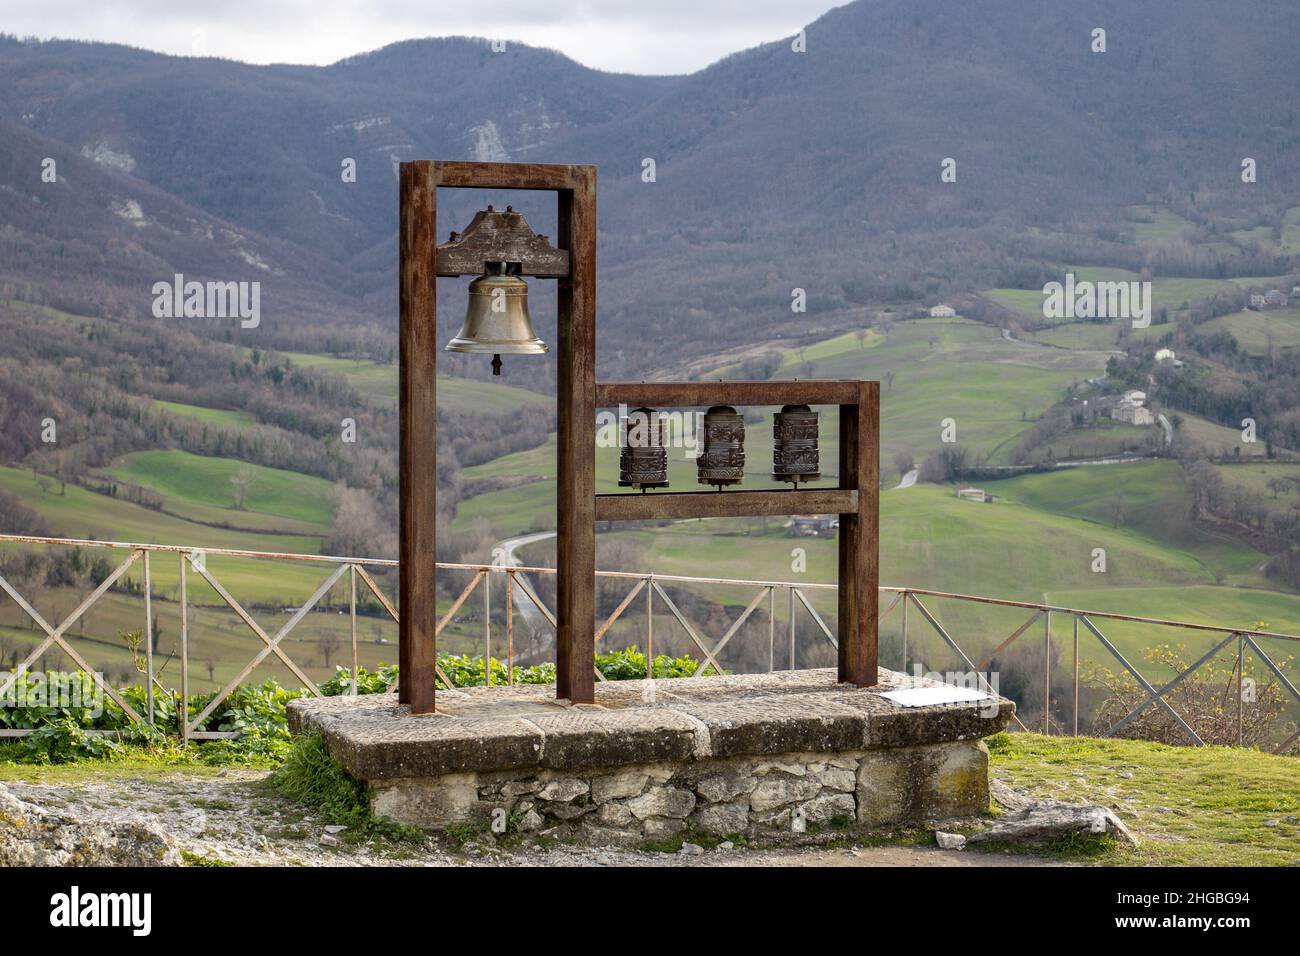 Italia:nell'antico borgo di Pennabilli suona una campana tibetana per l'Unione di due religioni (accanto alla campana ci sono tre mulini di preghiera tibetani) Foto Stock